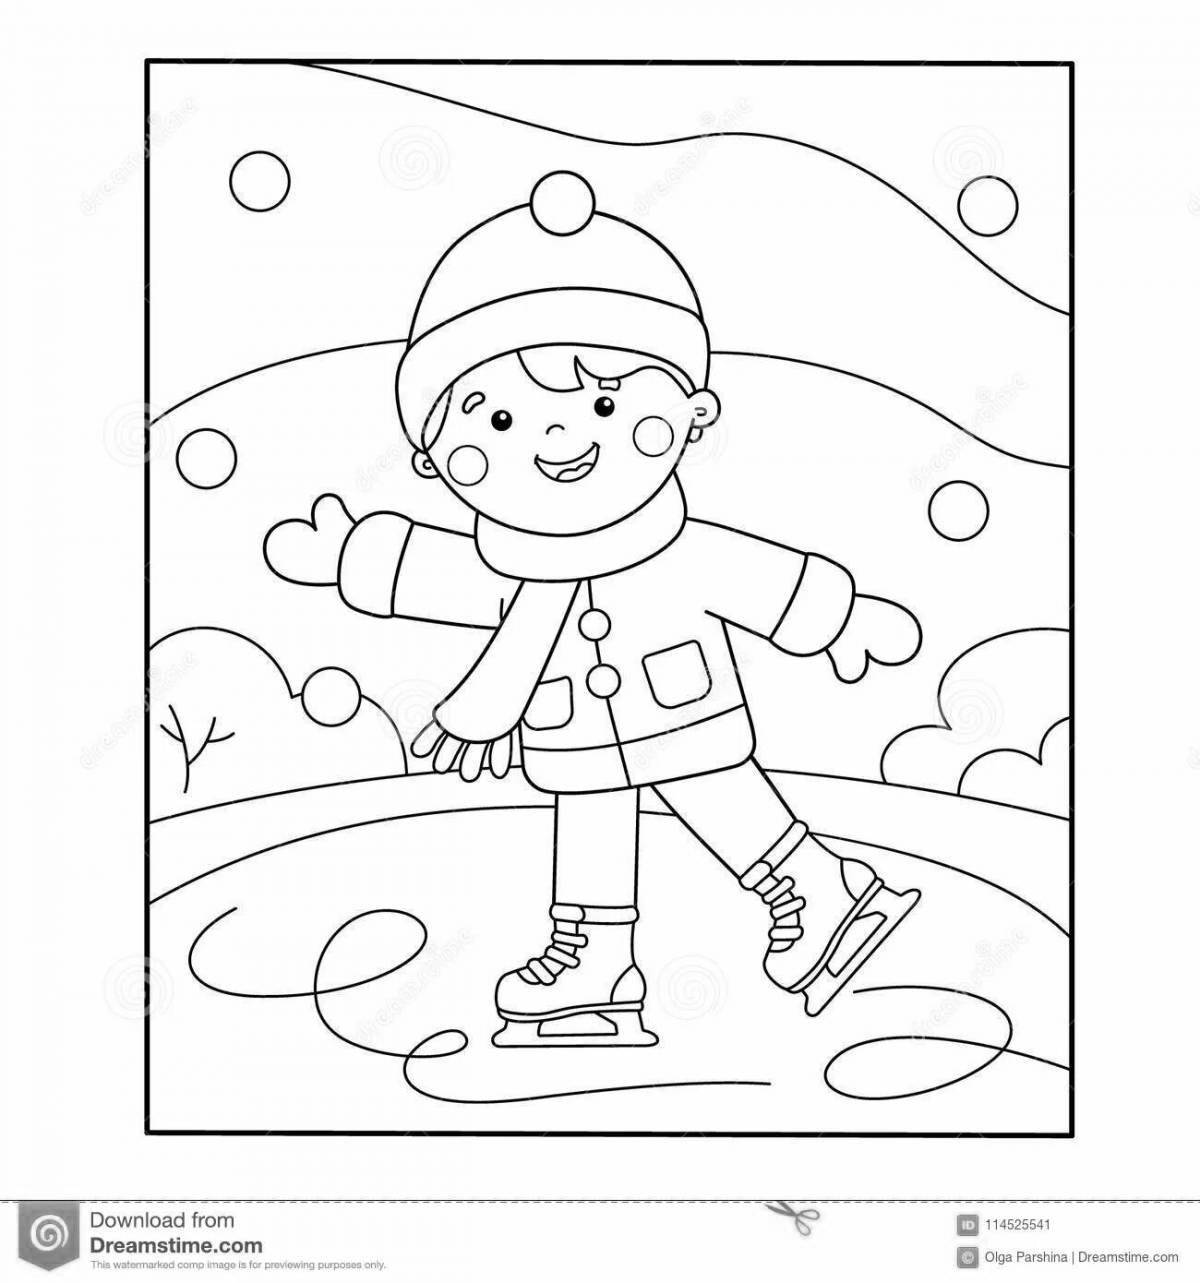 Веселая зимняя раскраска для дошкольников